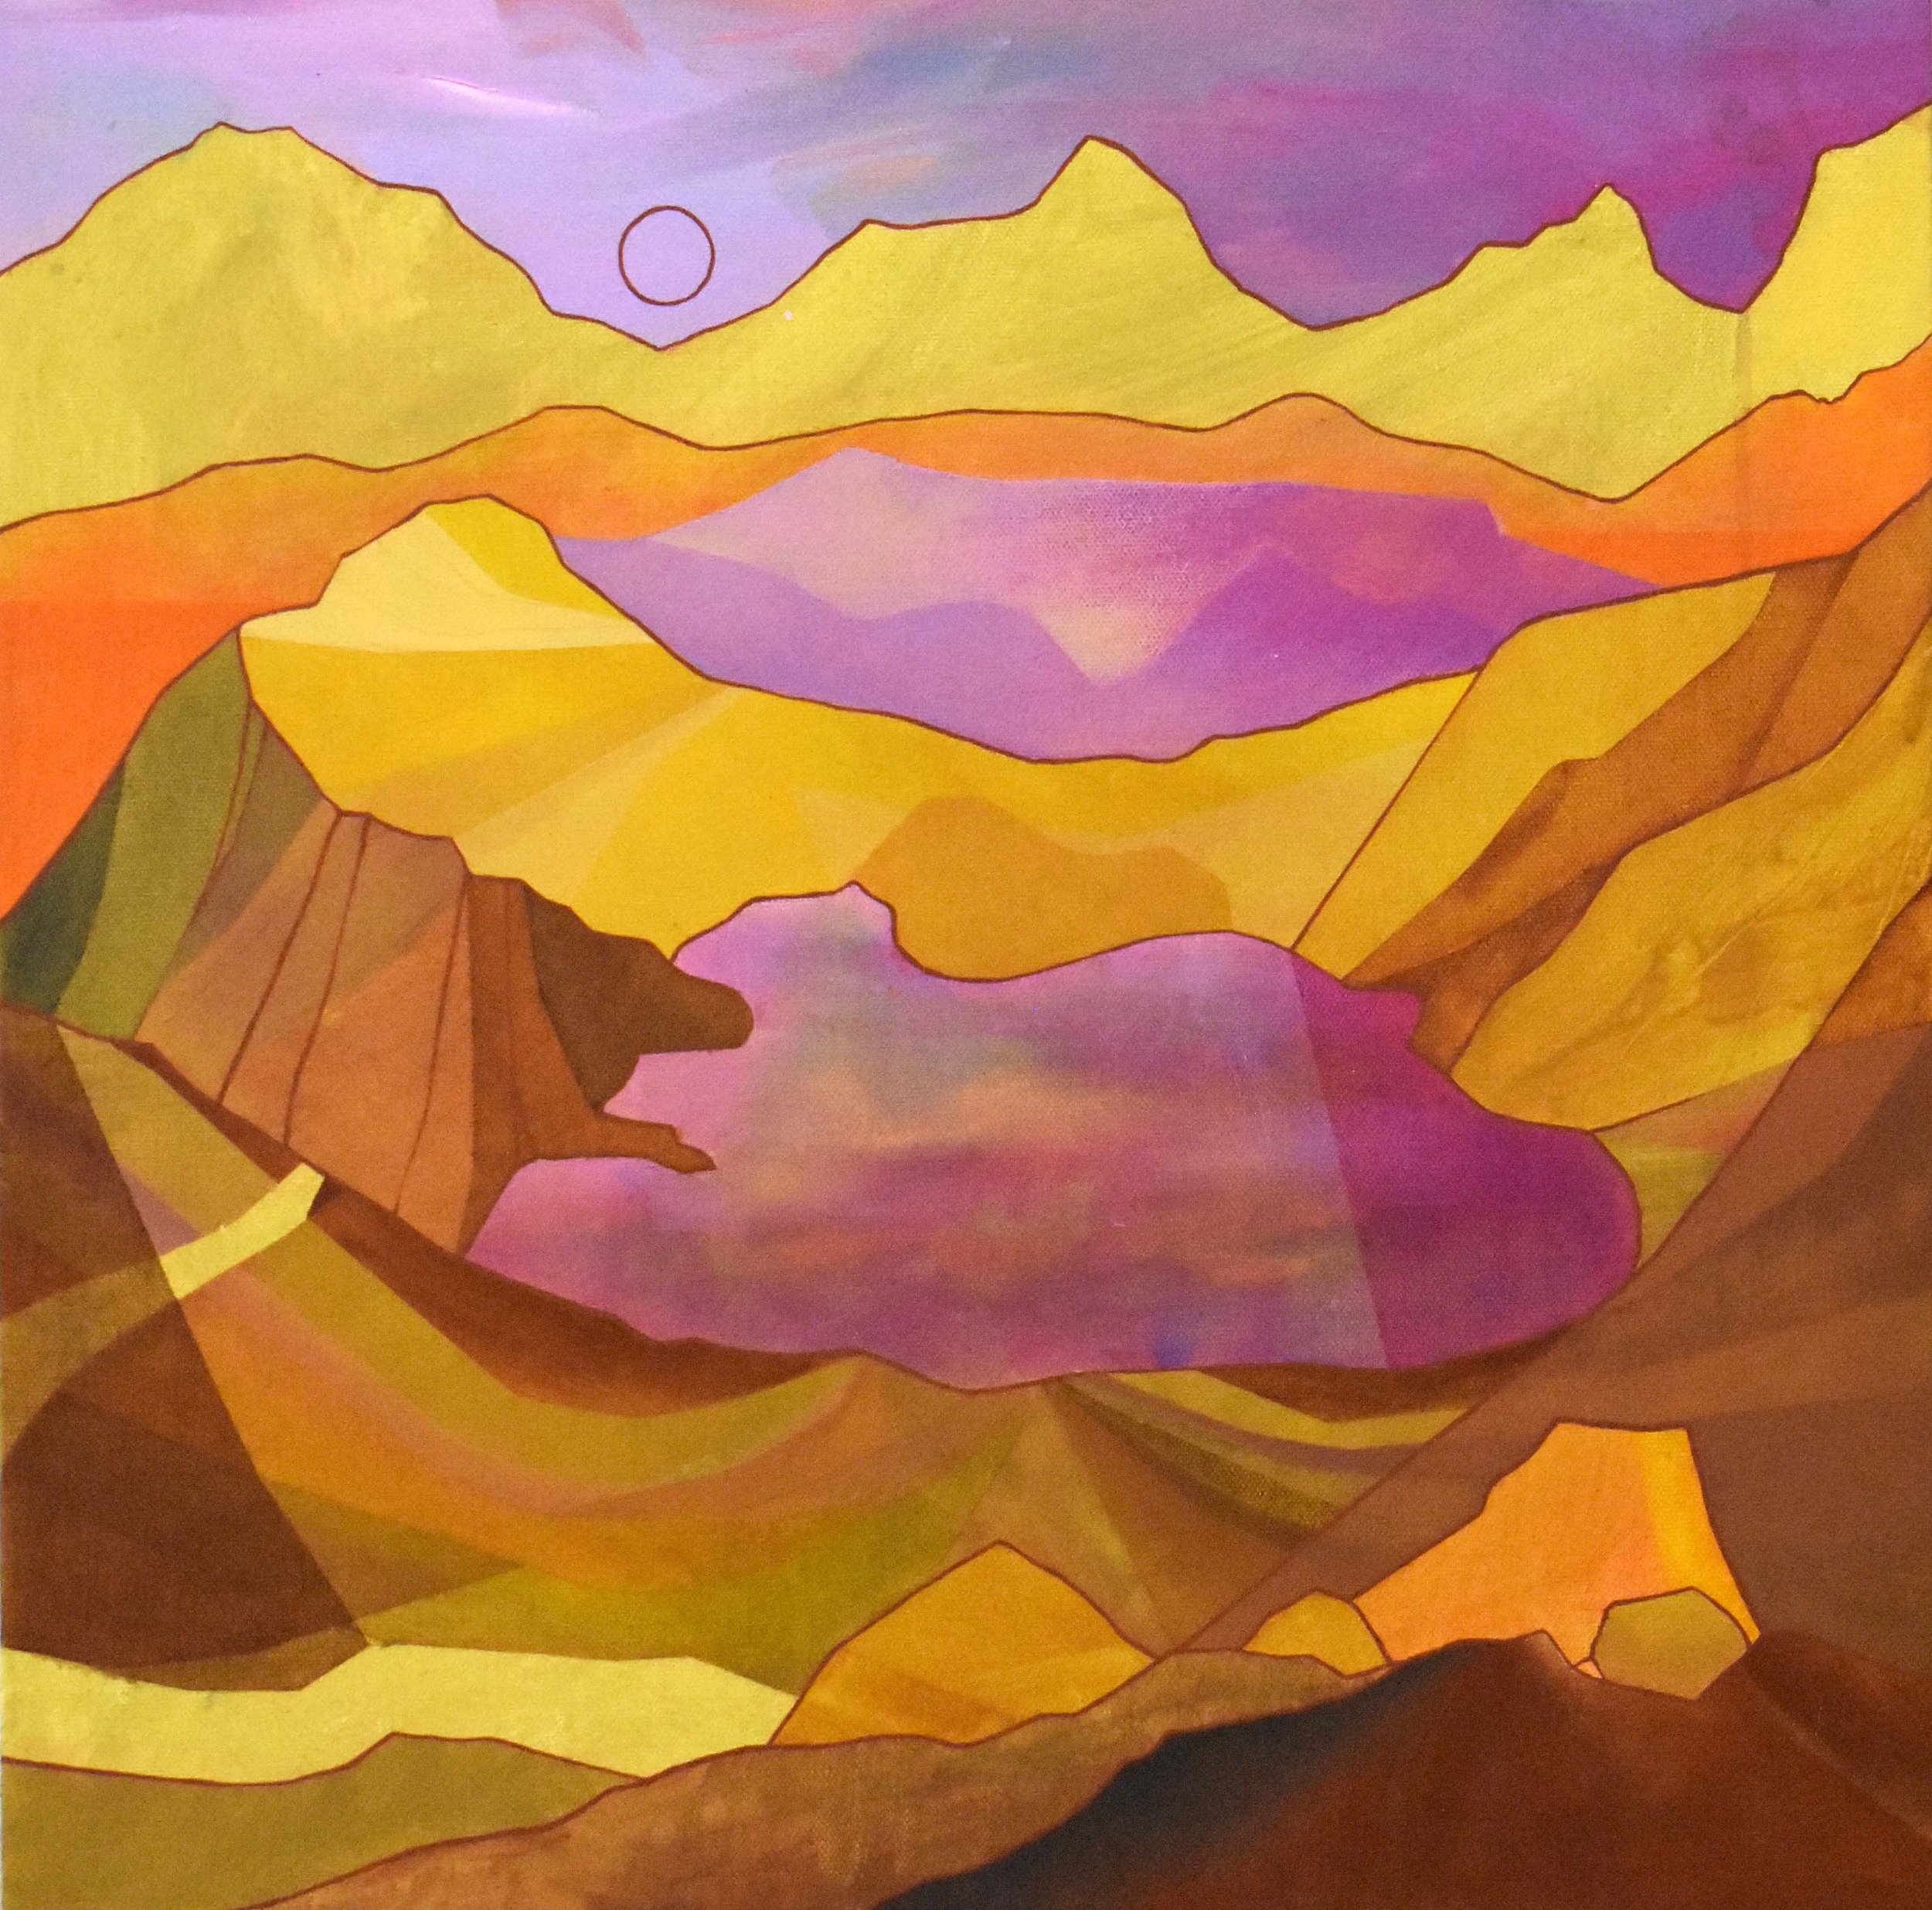 Sunrise Cauldron - 20"x20" Acrylic and gouache on canvas